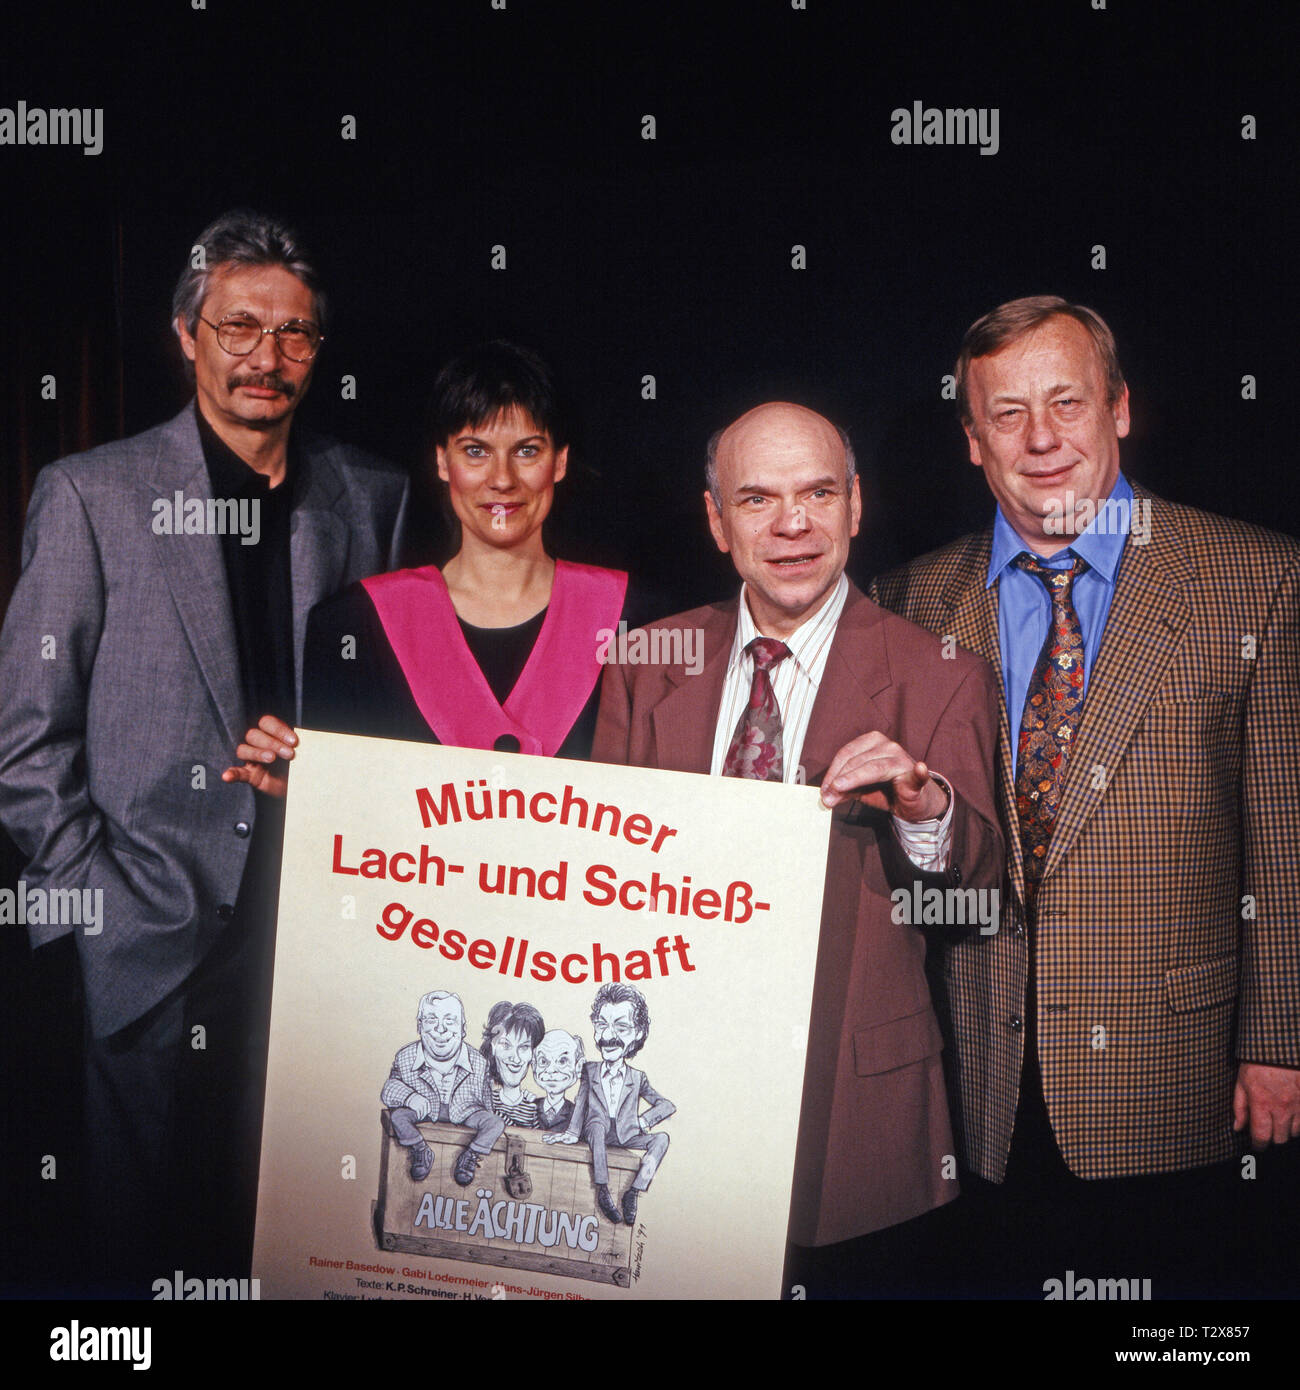 Münchner Lach- und Schießgesellschaft 1992, Programm: "Alle Ächtung', Mitwirkende: Henning Venske, Gabi Lodermeier, Hans Jürgen Silberbaum, Rainer Basedow Foto Stock